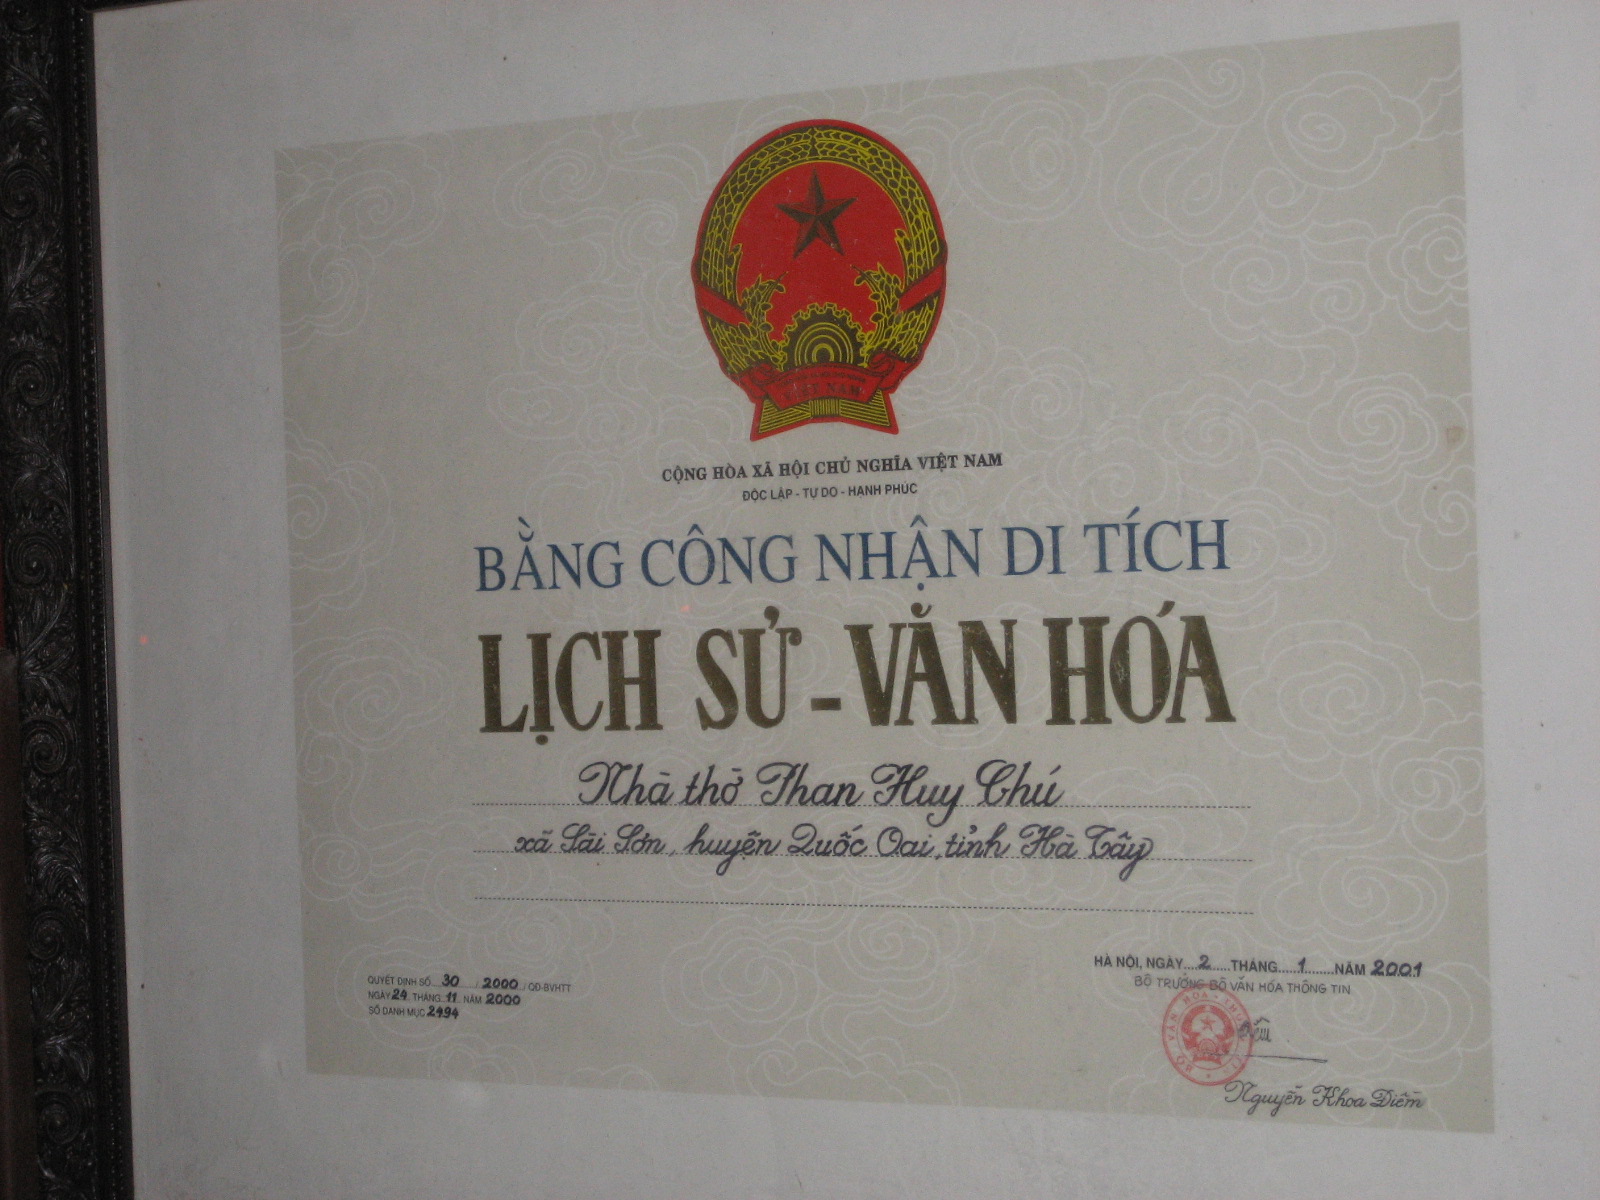 Bằng công nhận di tích Lịch Sử - Văn Hóa - nhà thờ Phan Huy Chú - xã Sài Sơn, huyện Quốc Oai, Hà Nội